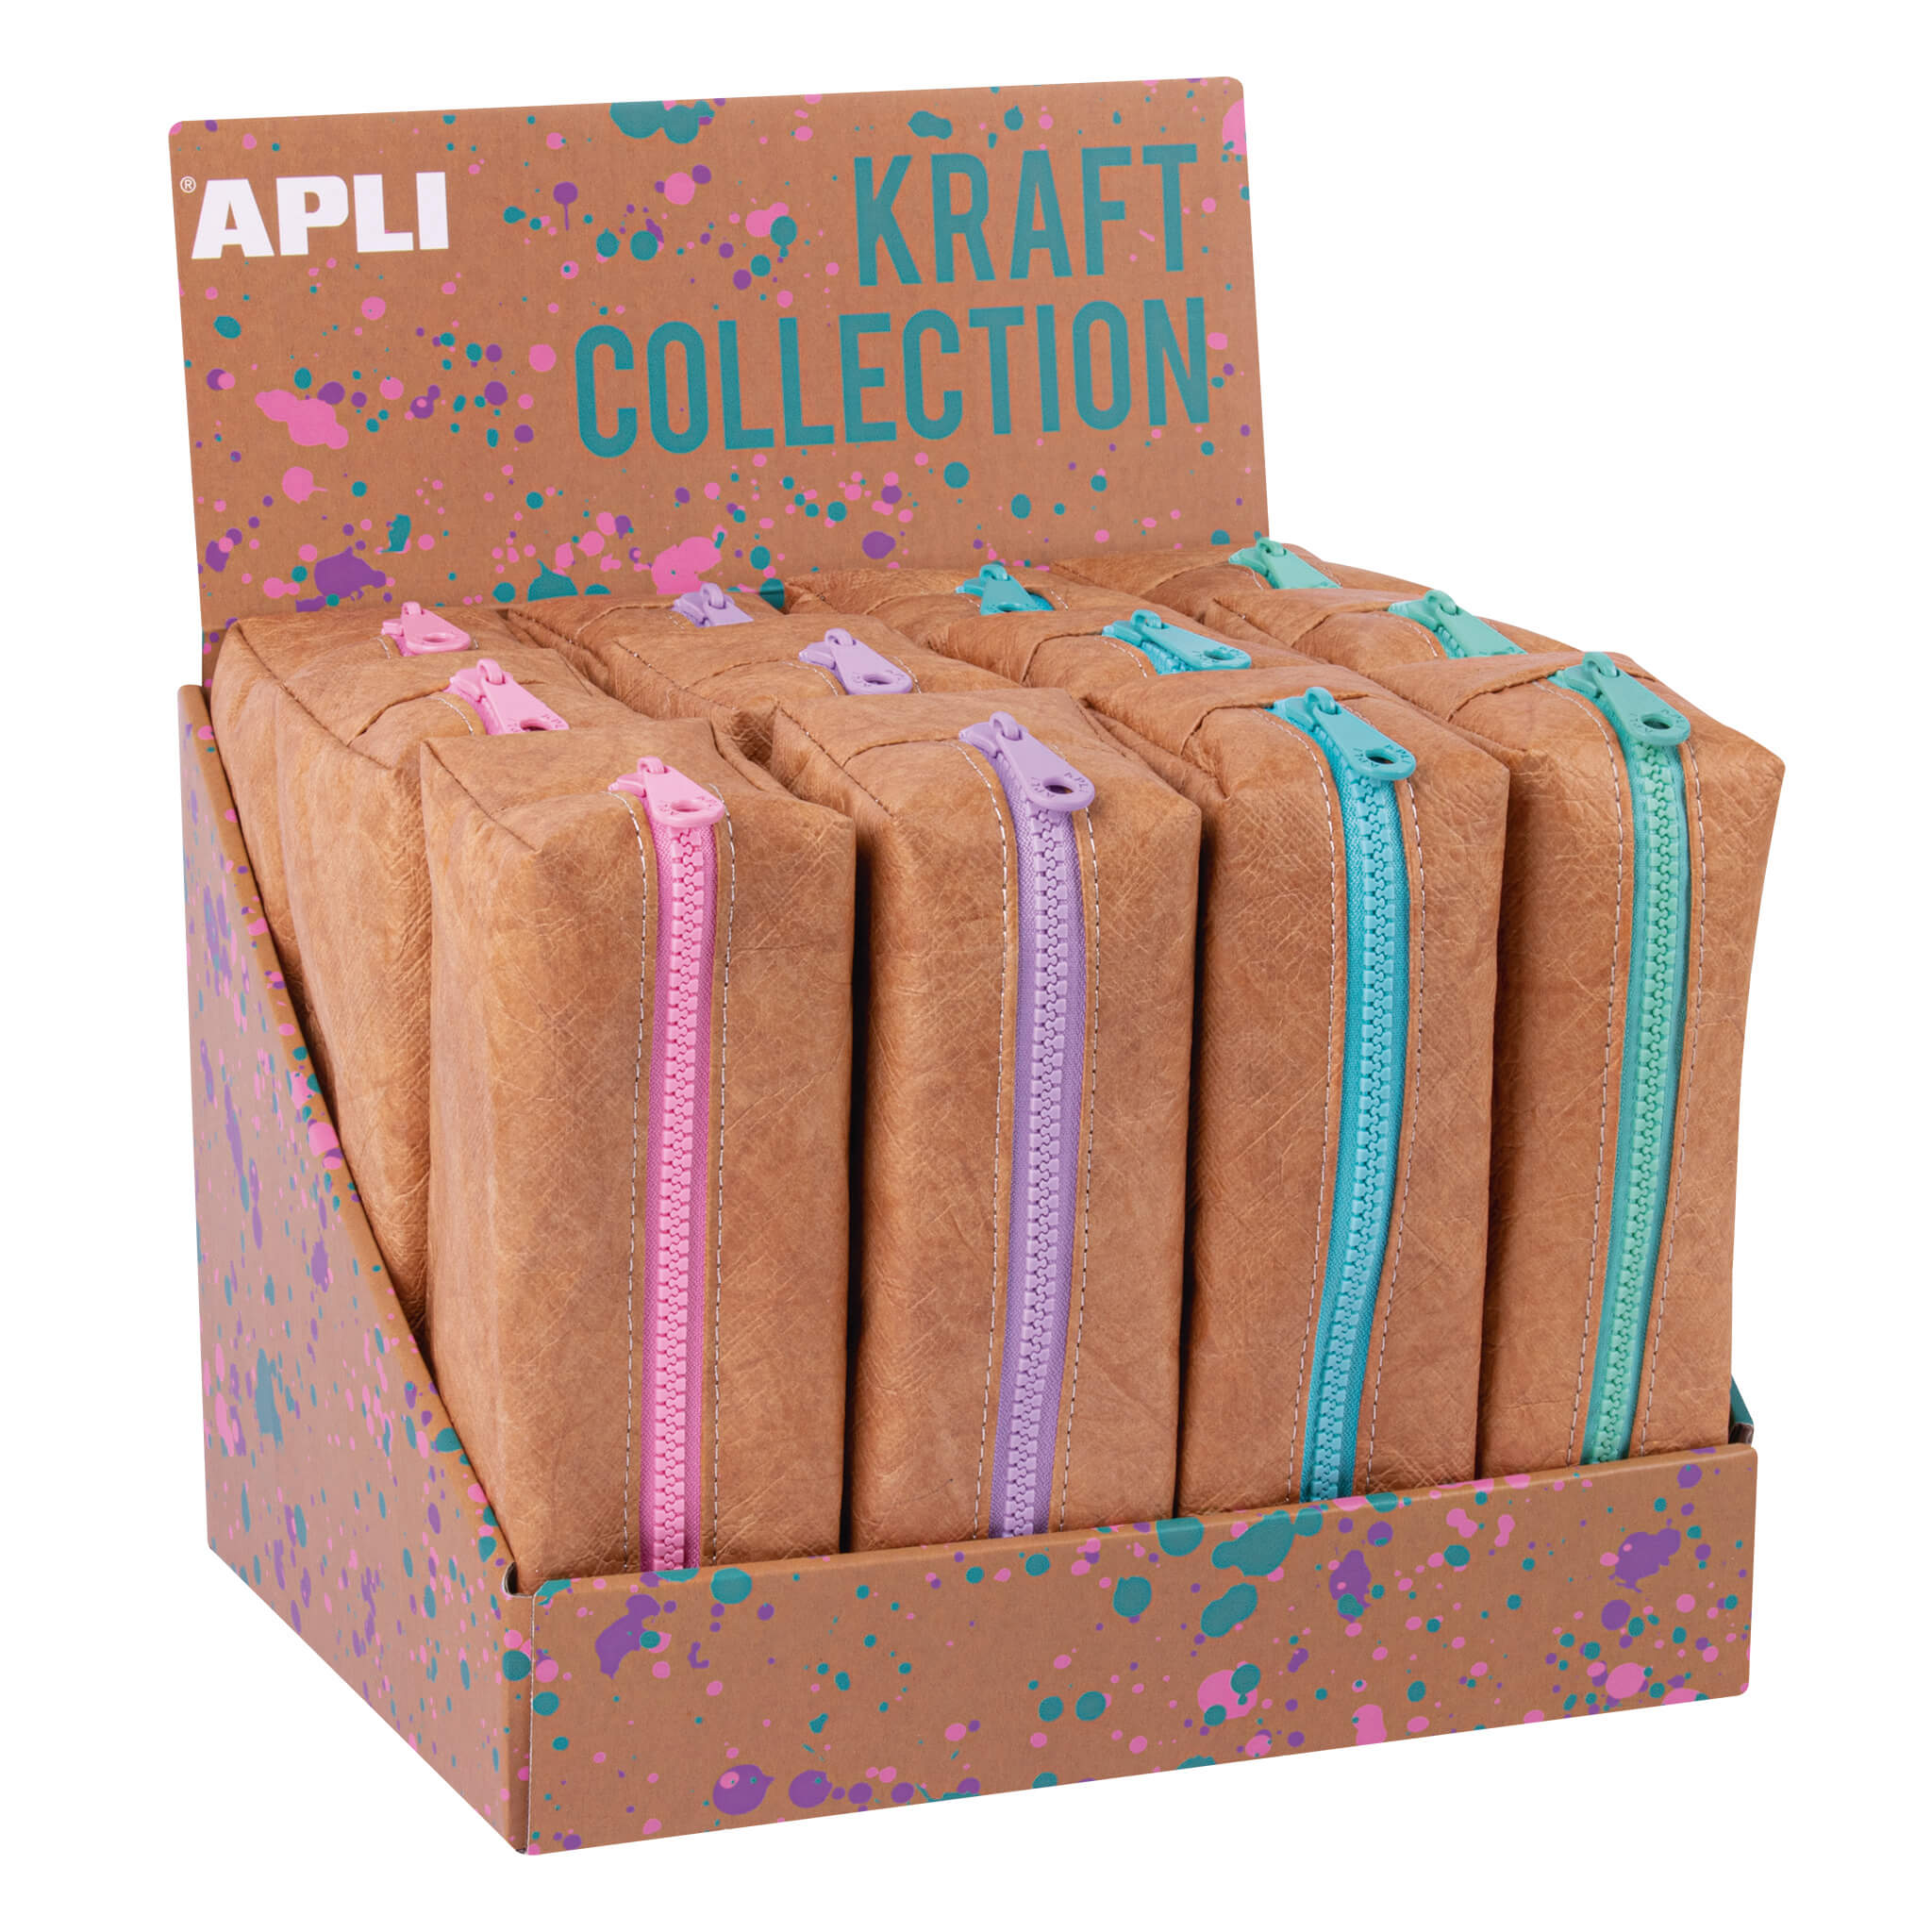 Apli Collection Kraft Lot de 12 Trousses